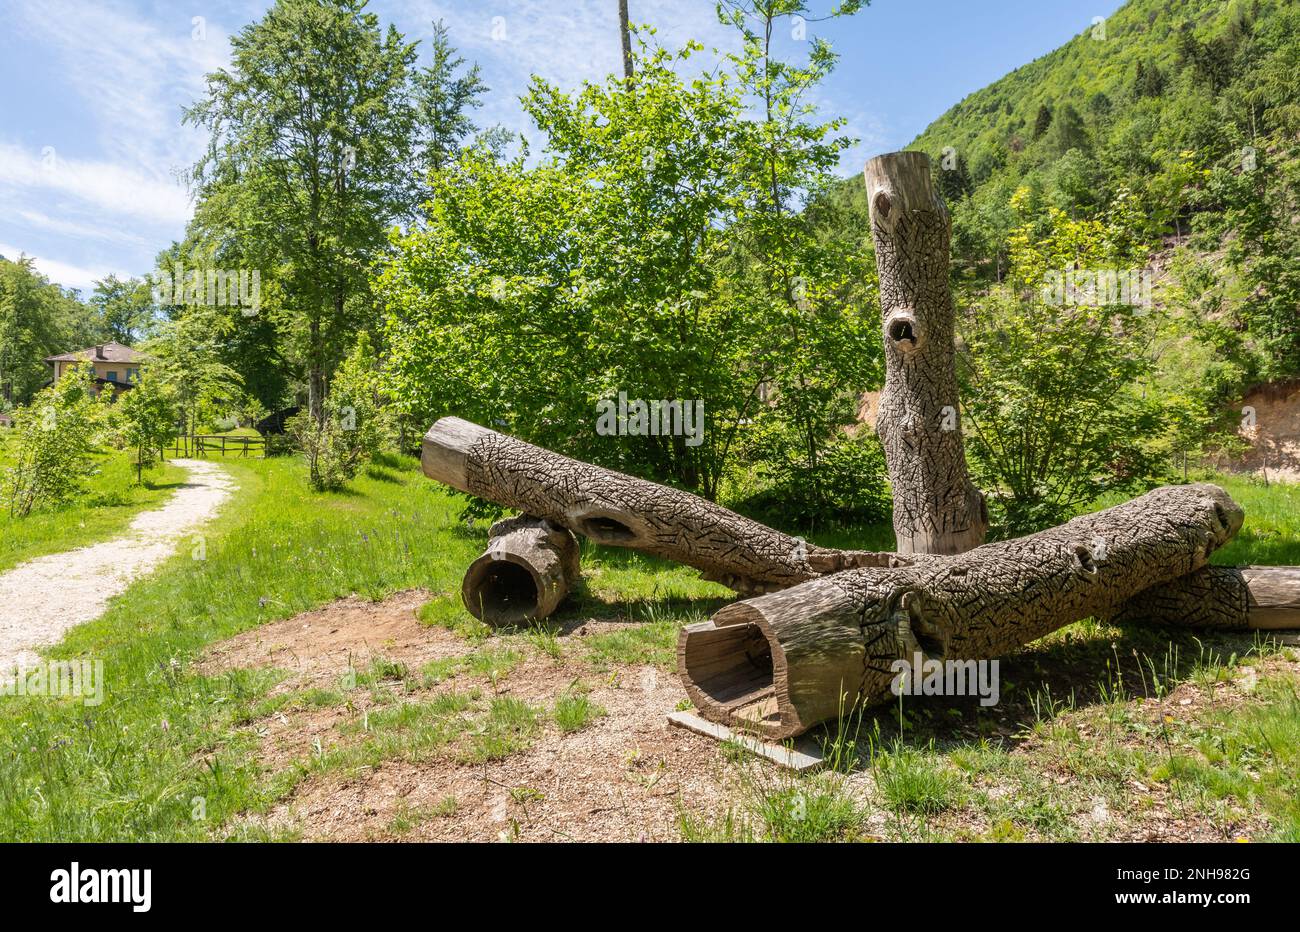 Arte Sella ist eine Ausstellung zeitgenössischer Kunst, die in den Wäldern des Sella-Tals, Borgo Valsugana - Trentino Alto Adige - Italien stattfindet Stockfoto